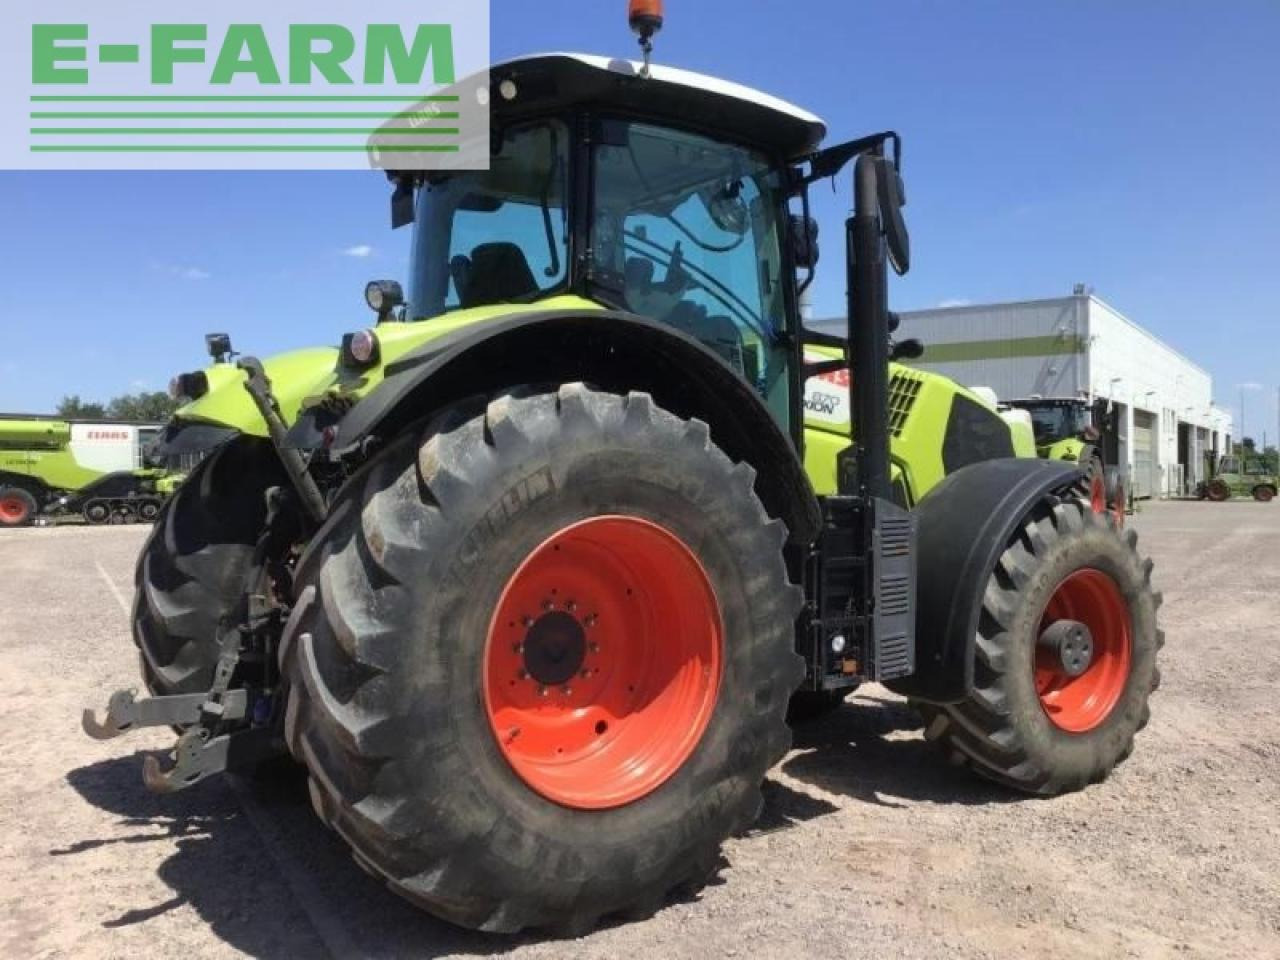 Farm tractor CLAAS axion 870